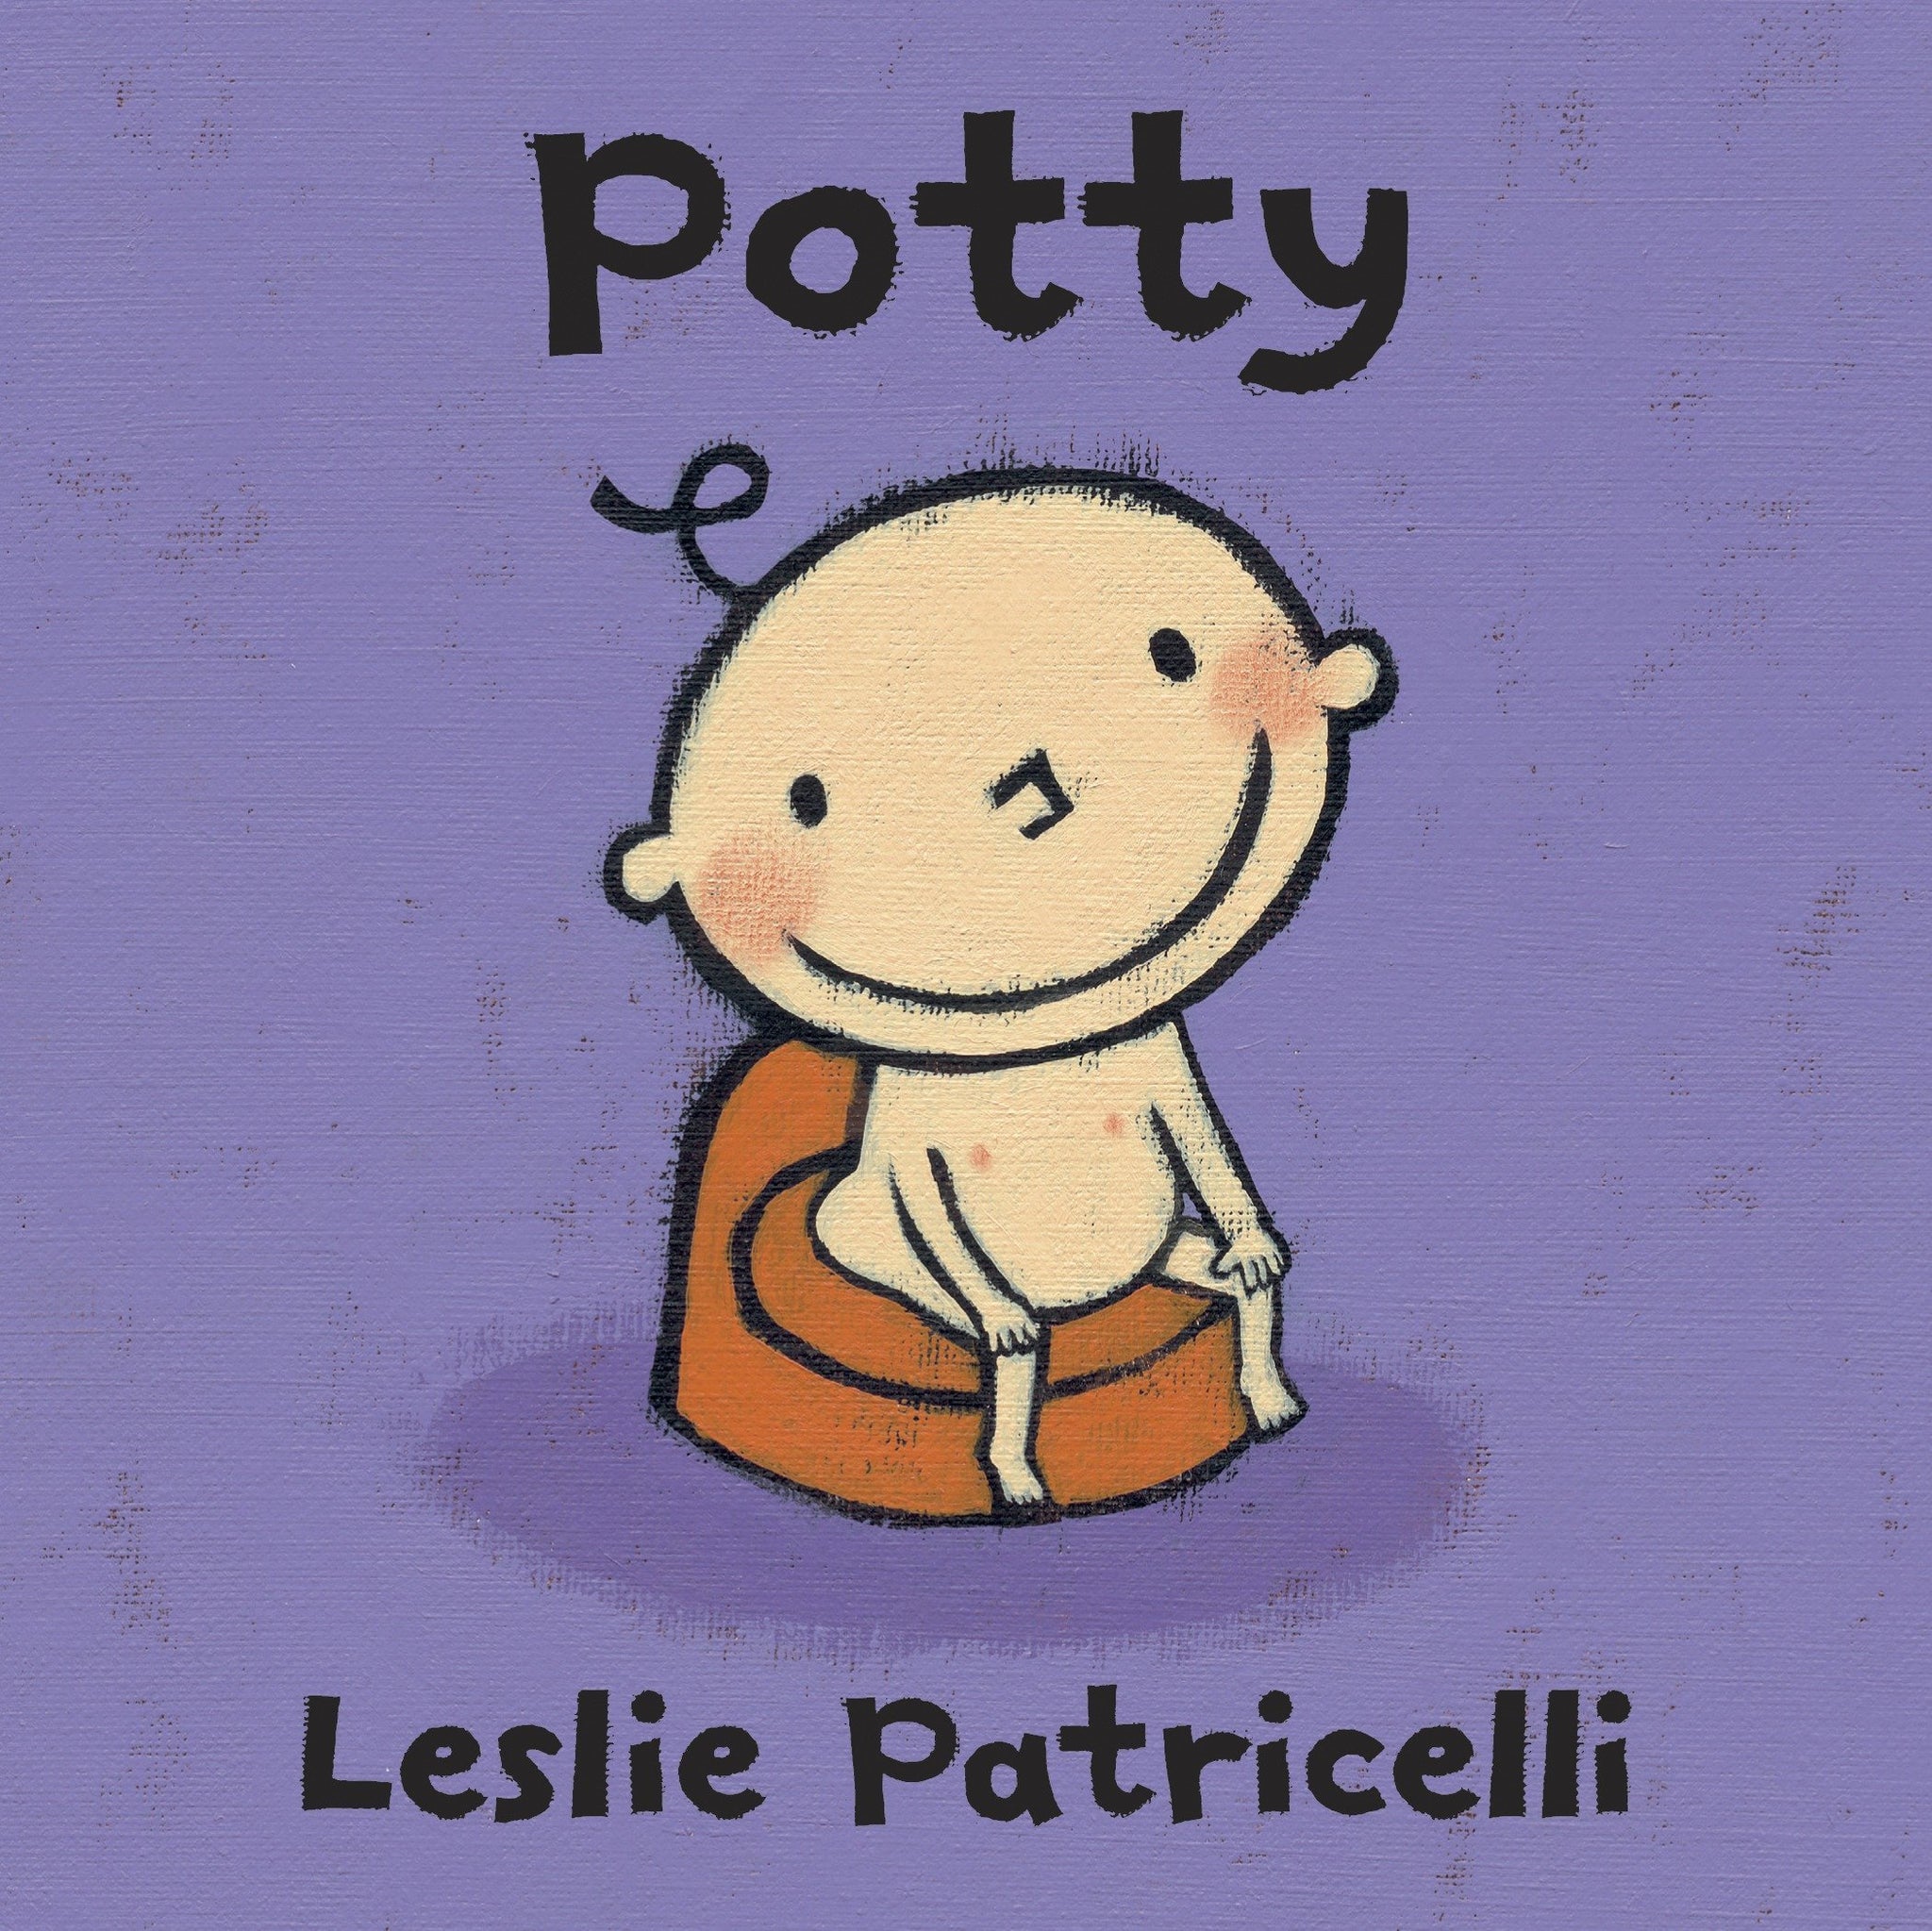 Potty - Leslie Patricelli